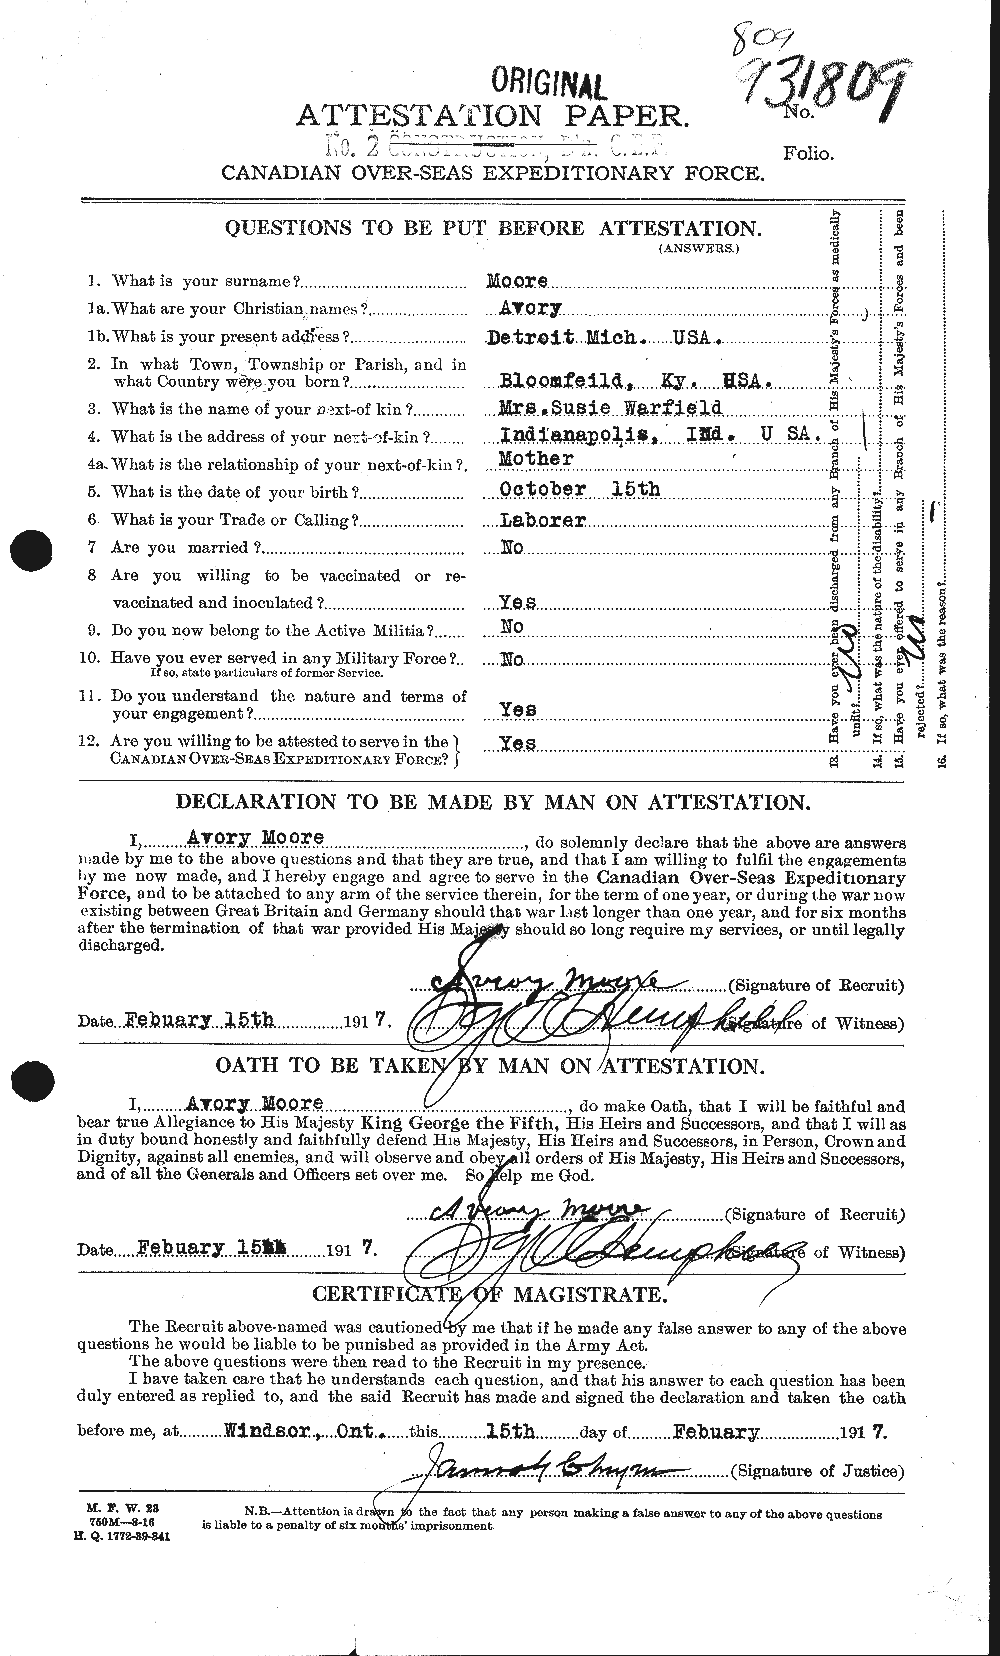 Dossiers du Personnel de la Première Guerre mondiale - CEC 506459a